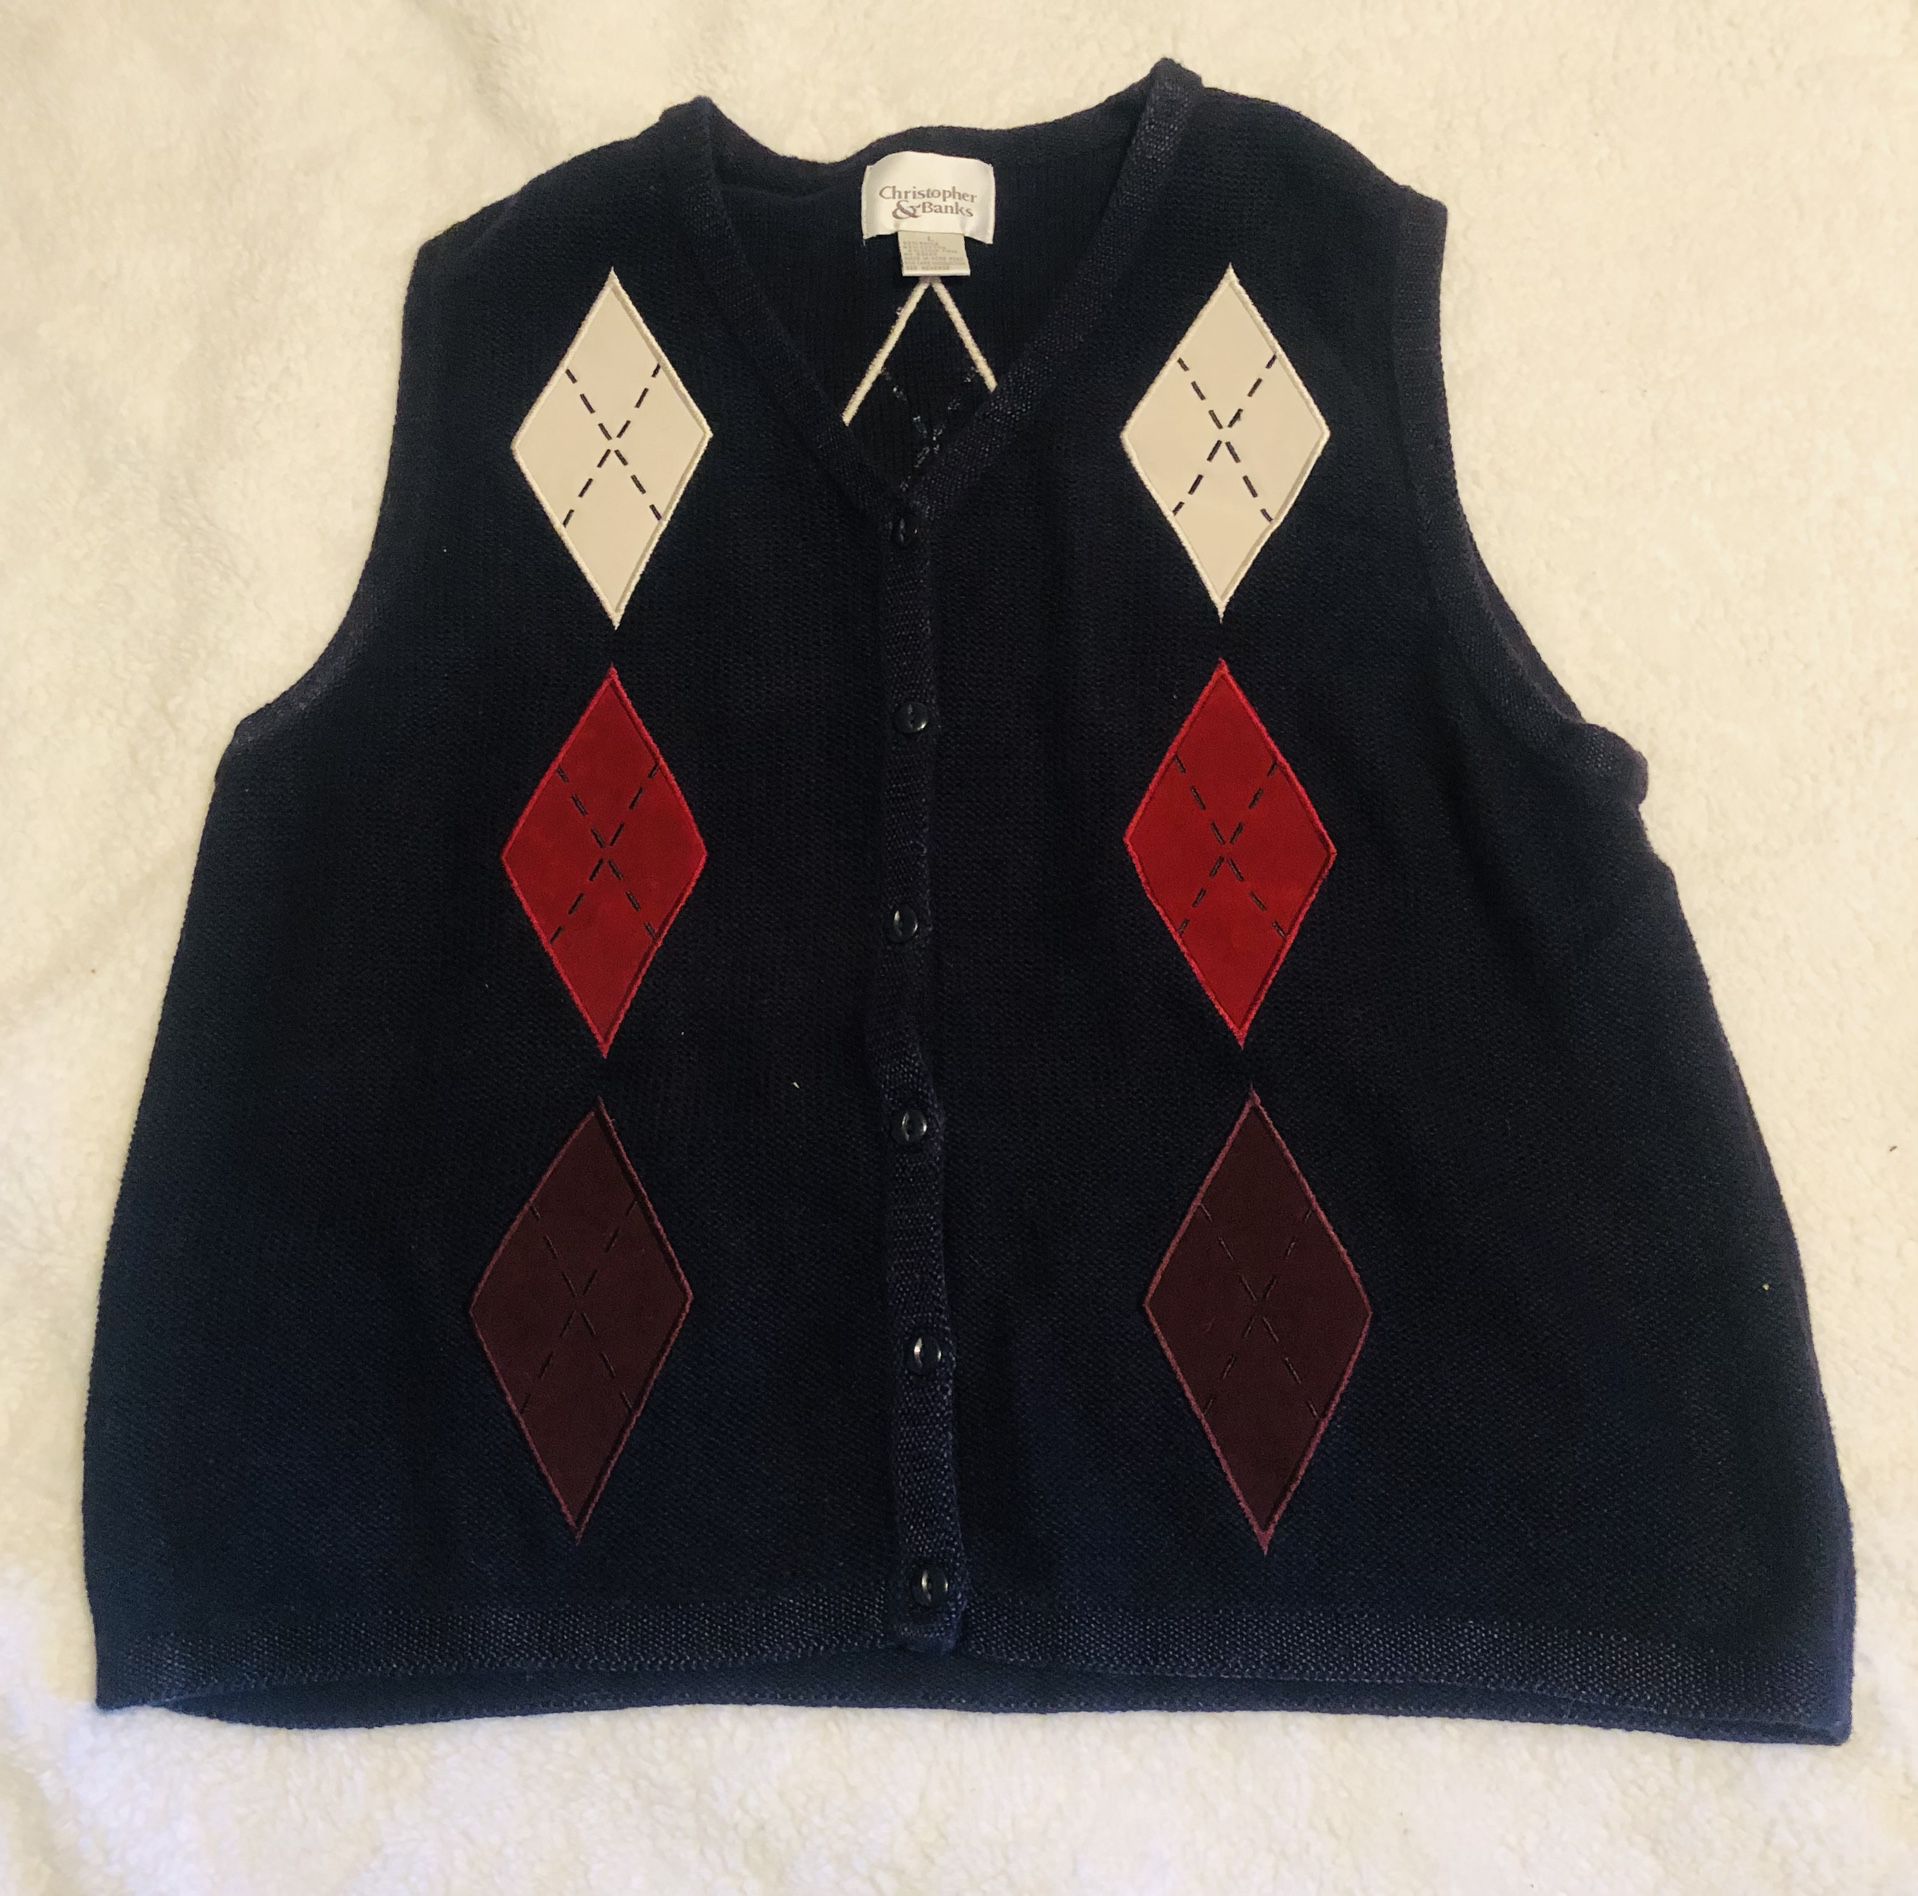 *Rare Find* Christopher & Banks Men’s Argyle Vintage Sweater Vest